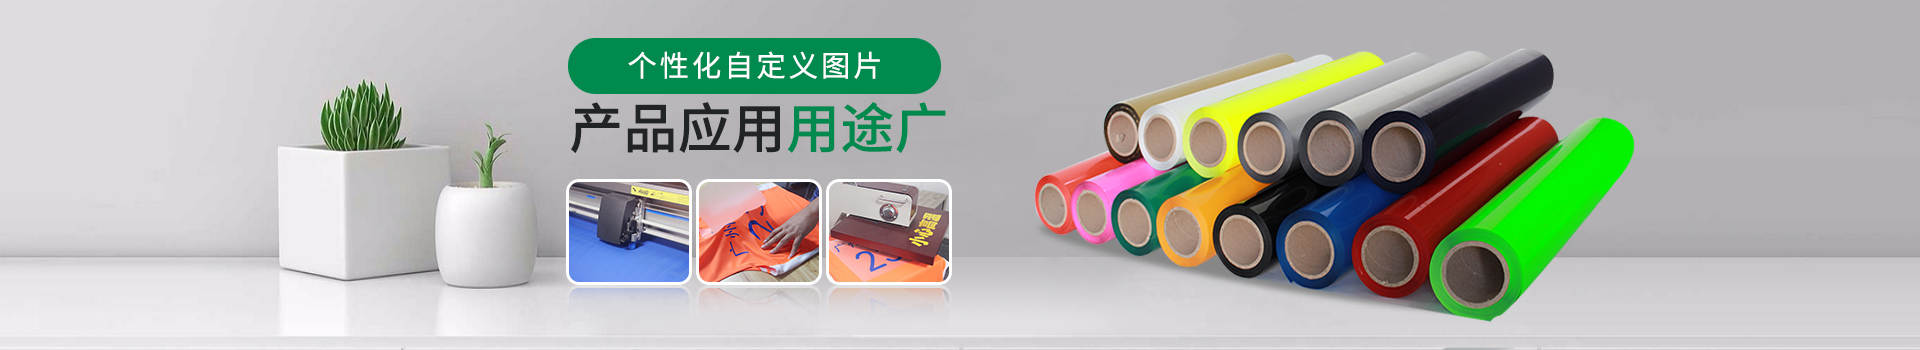 广州好印热转印刻字膜:个性化自定义图片，产品应用用途广